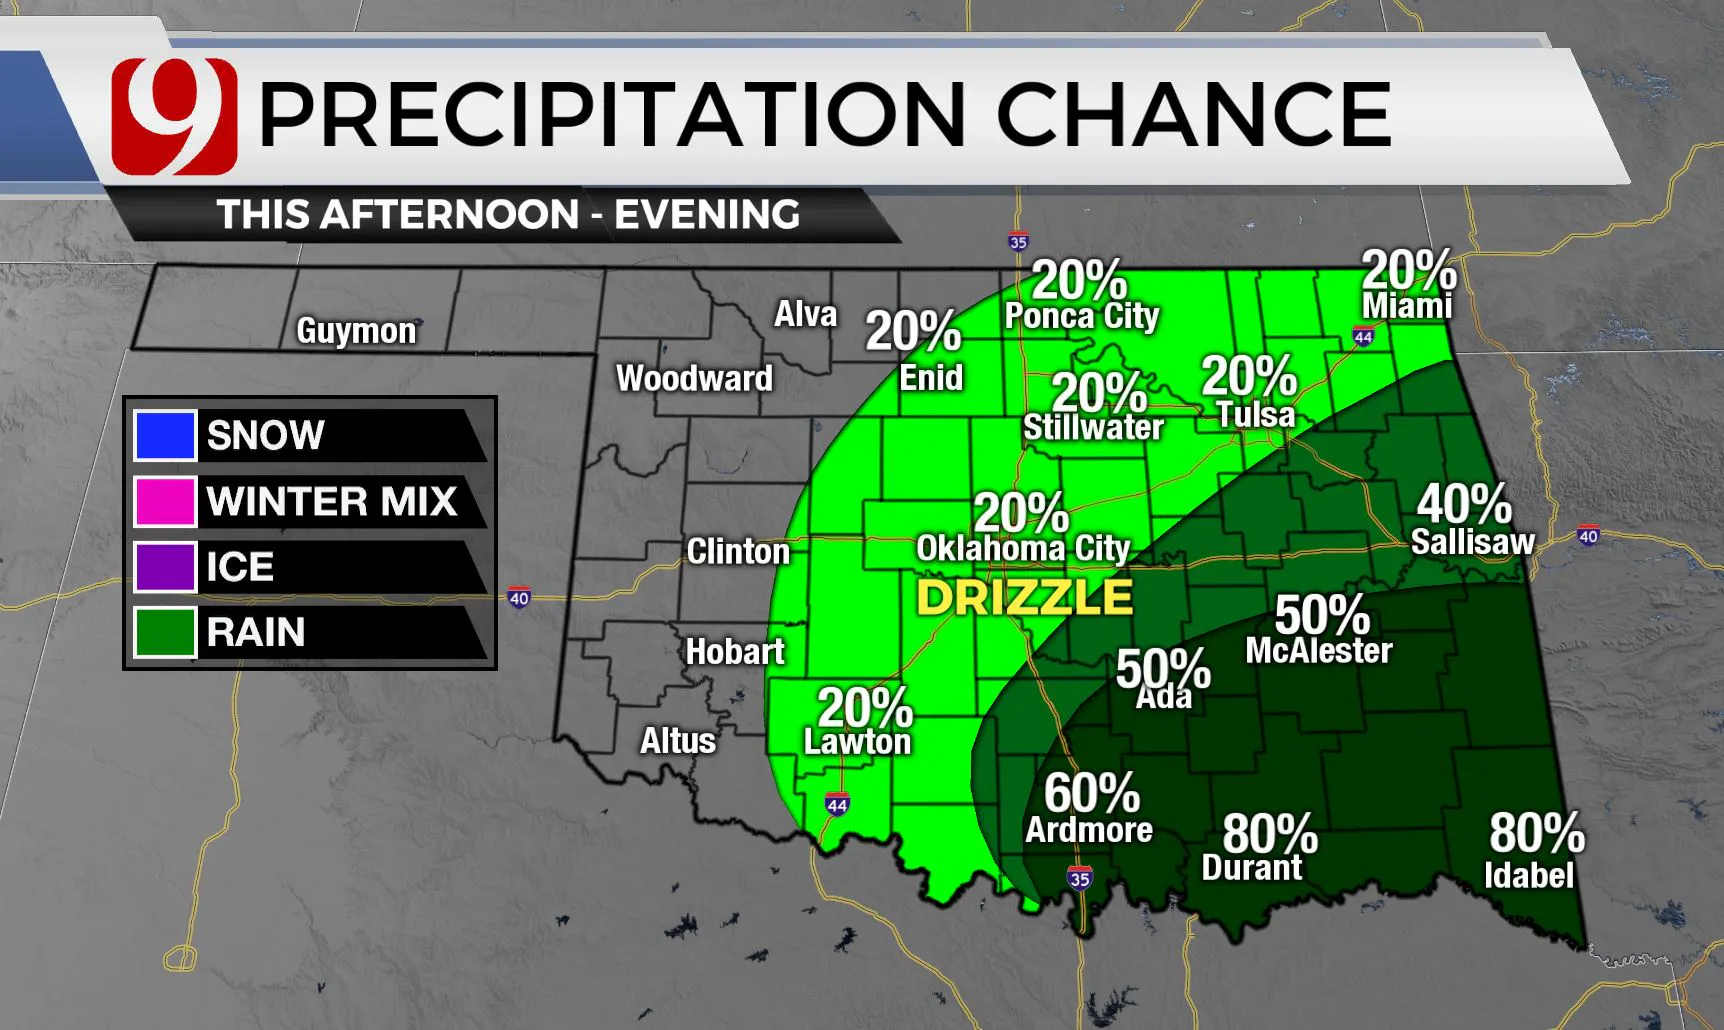 Precipitation chance for Wednesday.